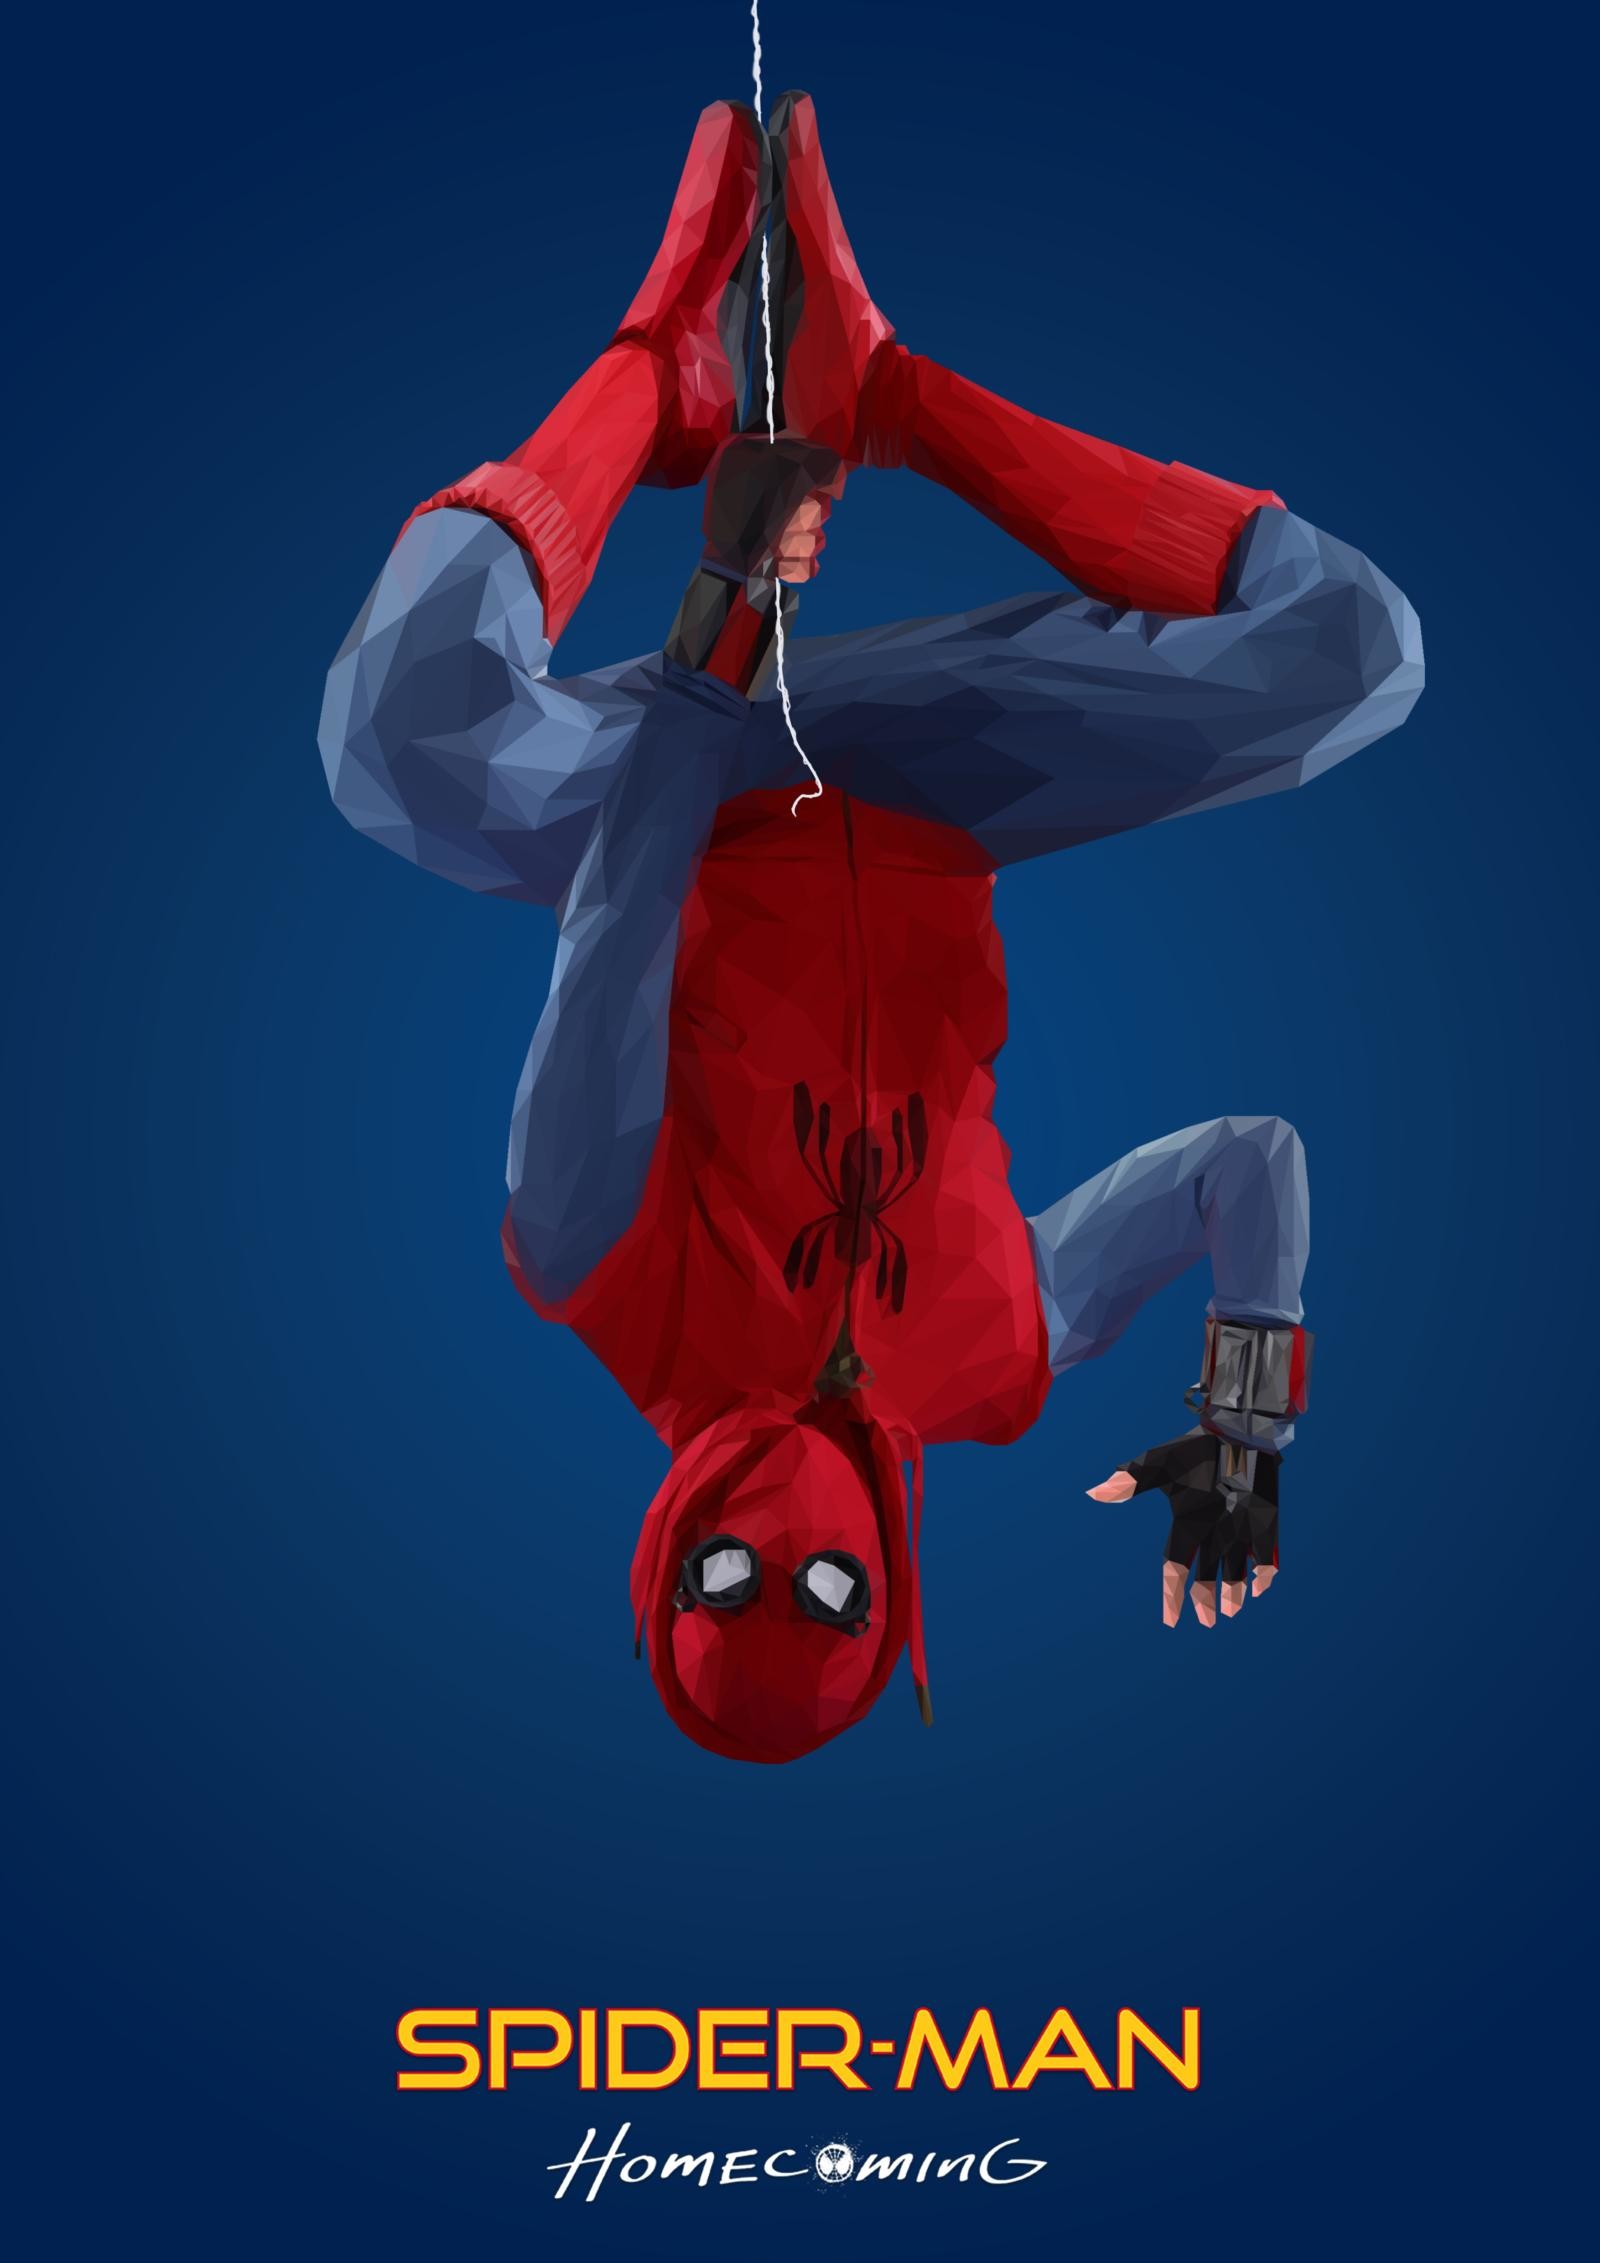 spiderman homecoming fondos de pantalla hd,hombre araña,personaje de ficción,actuación,superhéroe